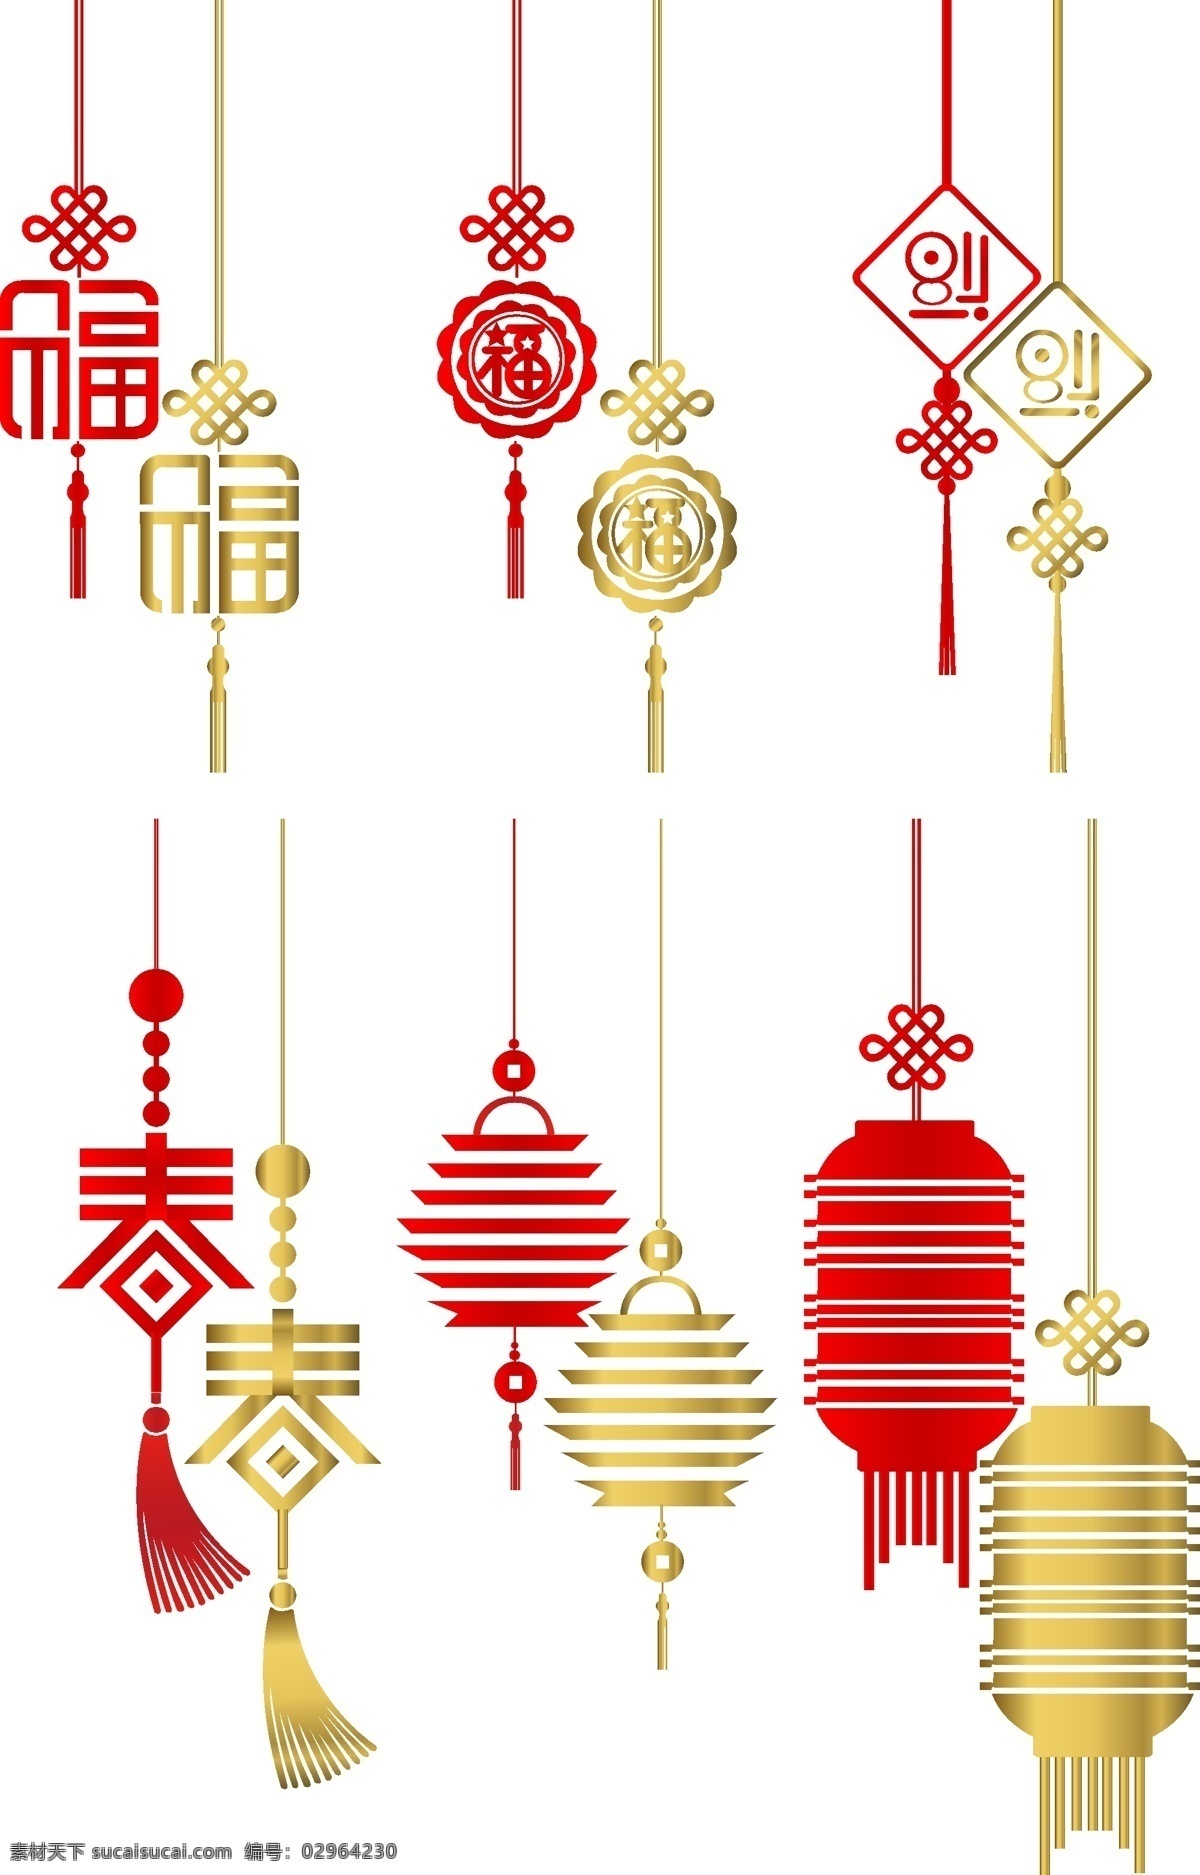 过年 红色 中国结 元素 商用 喜庆 中国红 金色 福字 新春 饰品 矢量 套图 简约风格